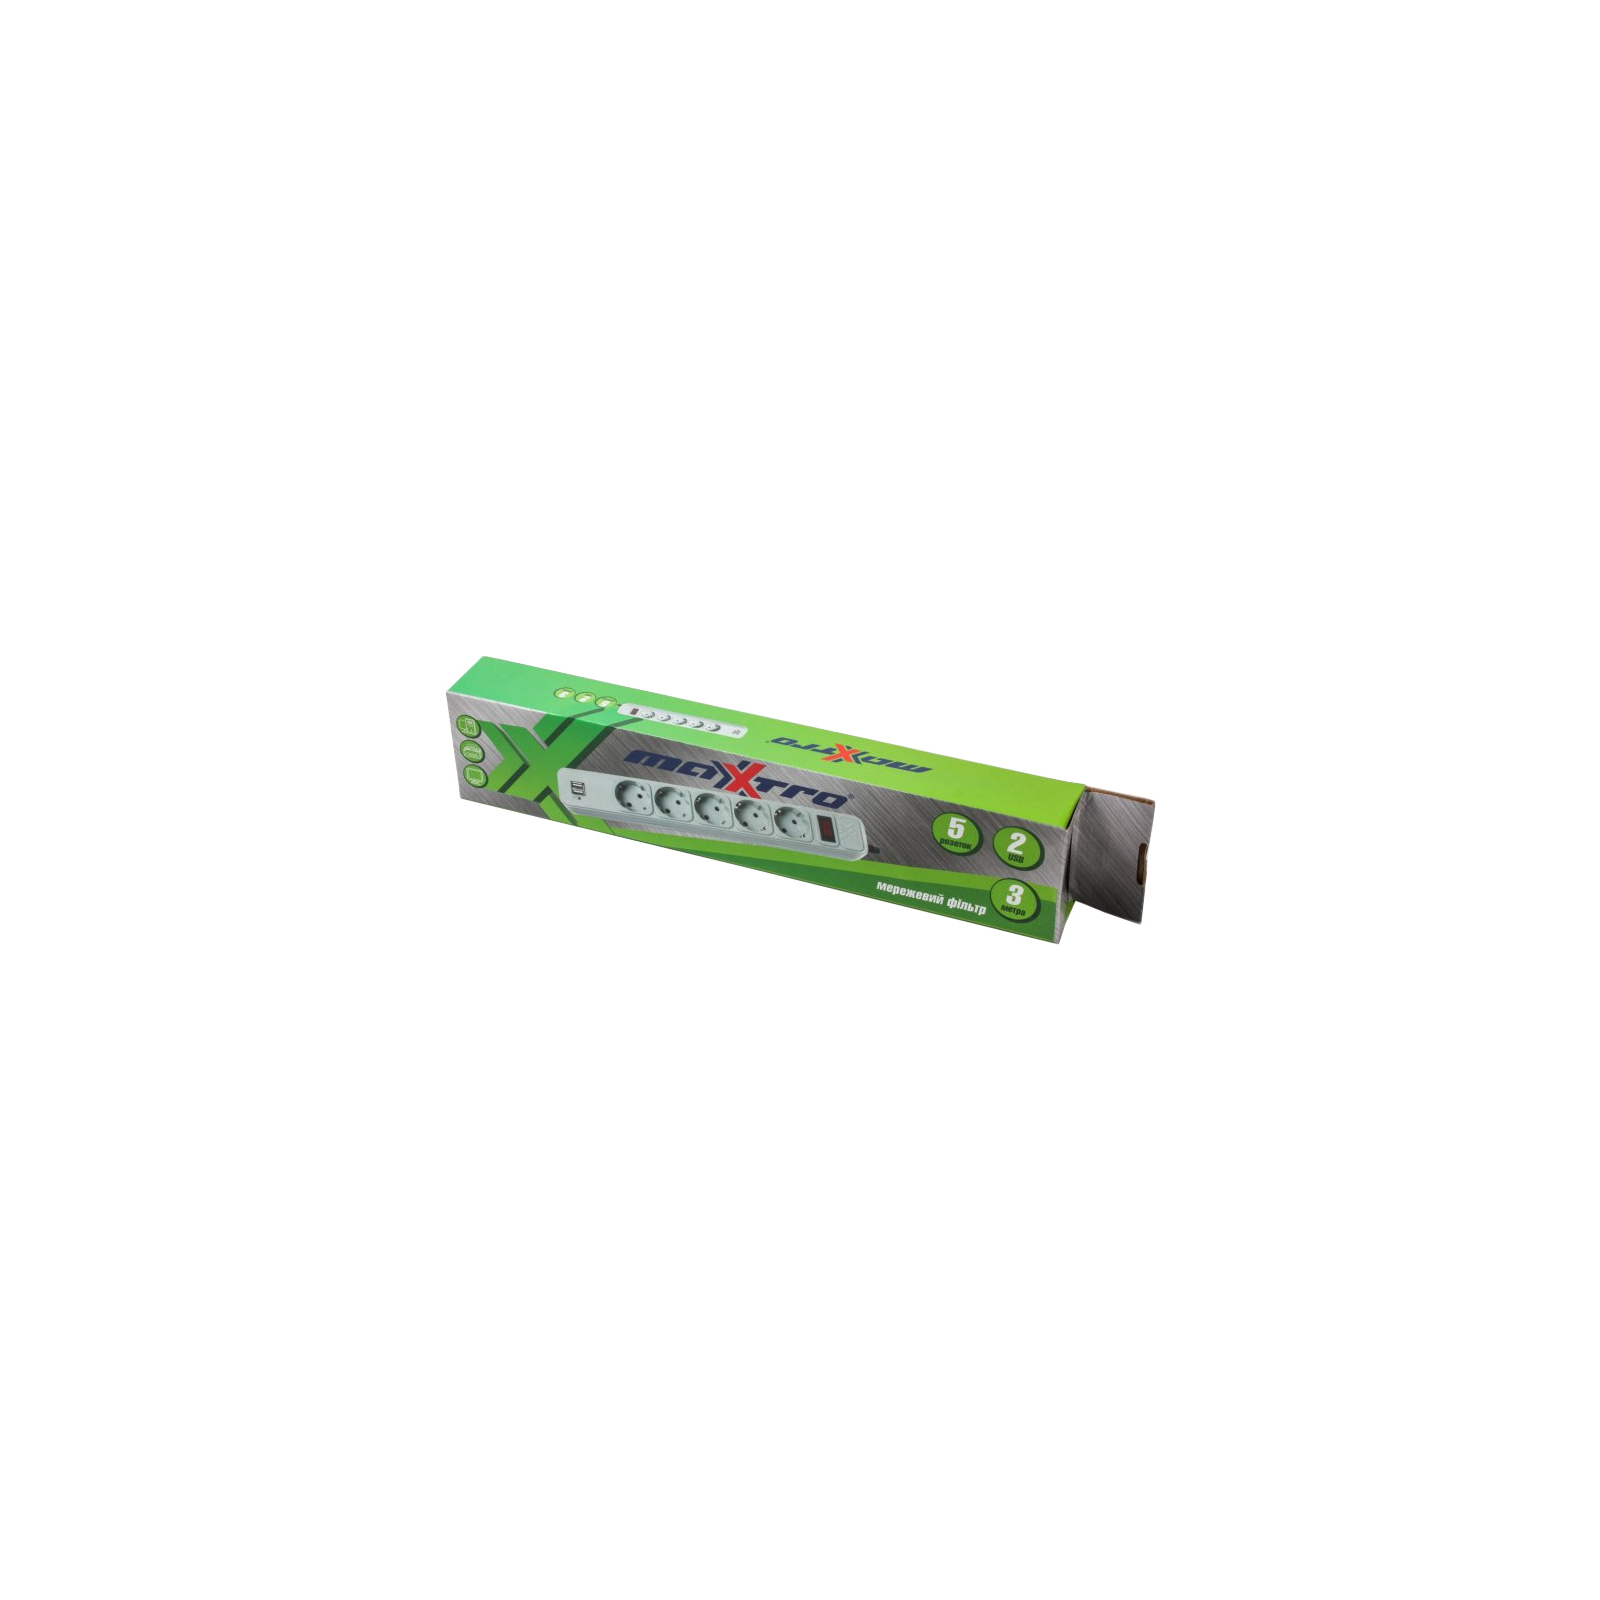 Сетевой фильтр питания Maxxtro PWE-05K-3, серый, 3 м кабель, 5 розеток, USB зарядка 2А (PWE-05K-3) изображение 2